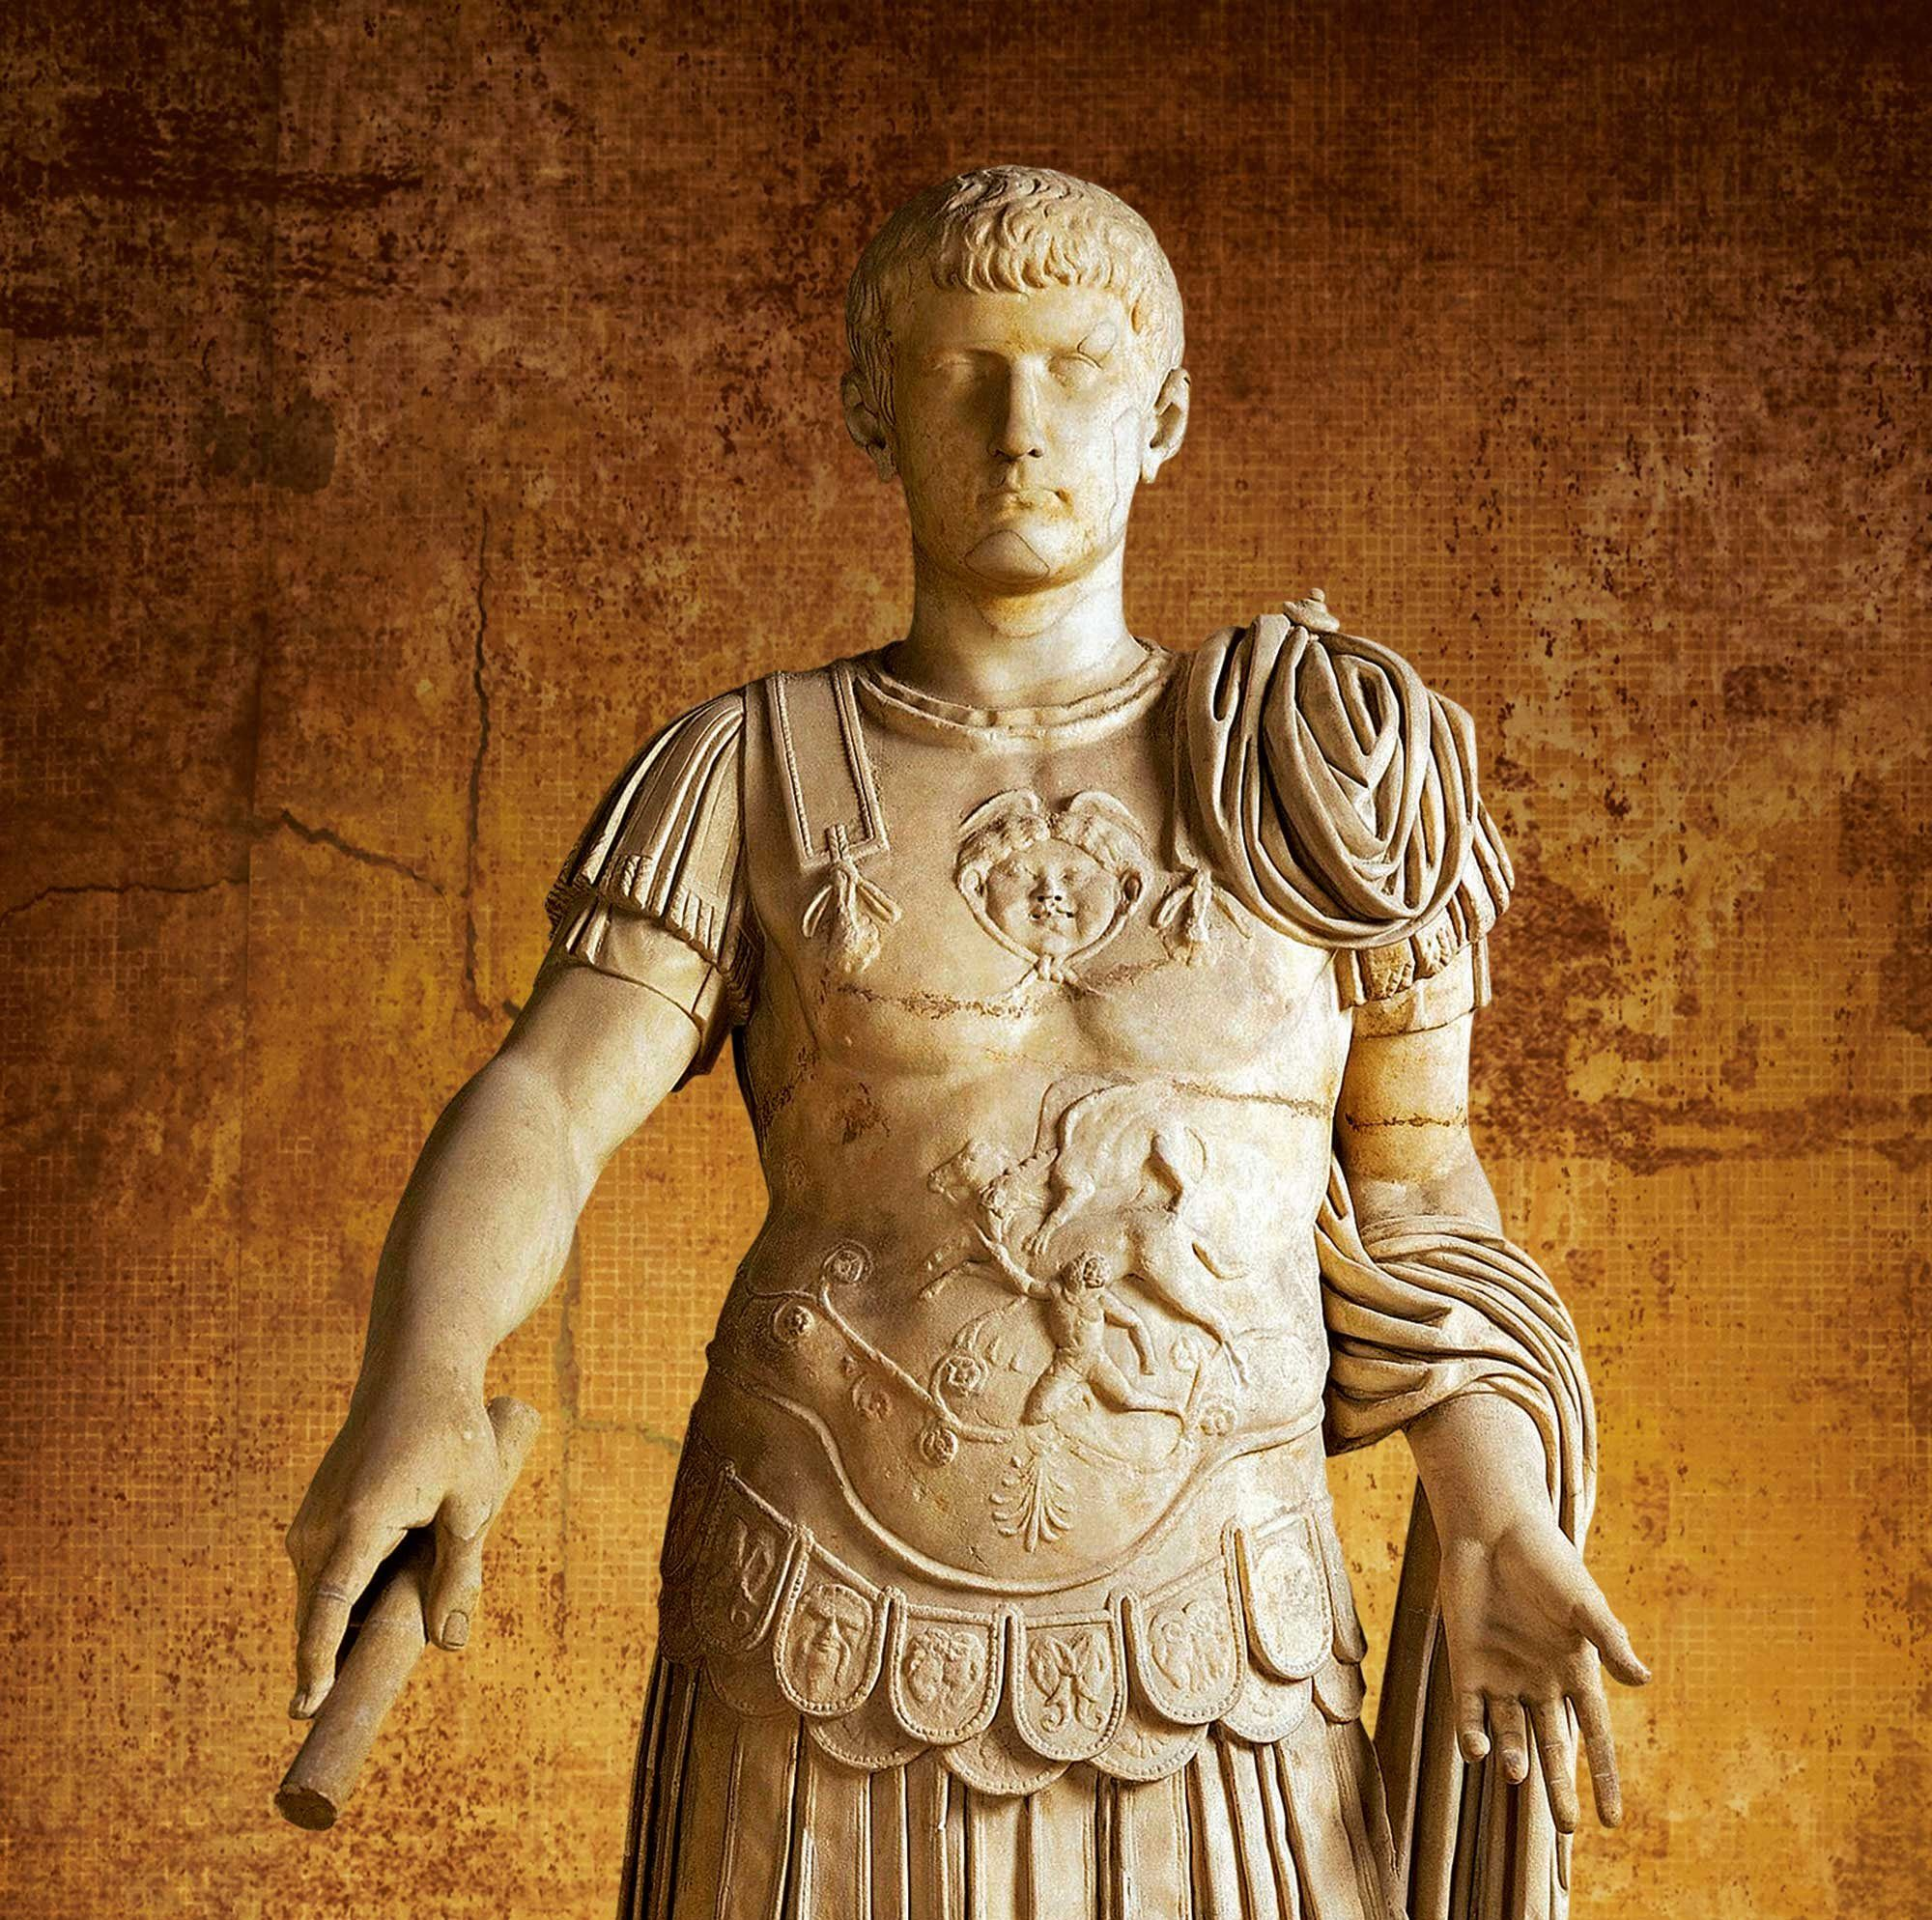 
											
											Kaligula – abadiy sharmandalik ramzi. O‘zini xudo deb hisoblagan Rim imperatori
											
											